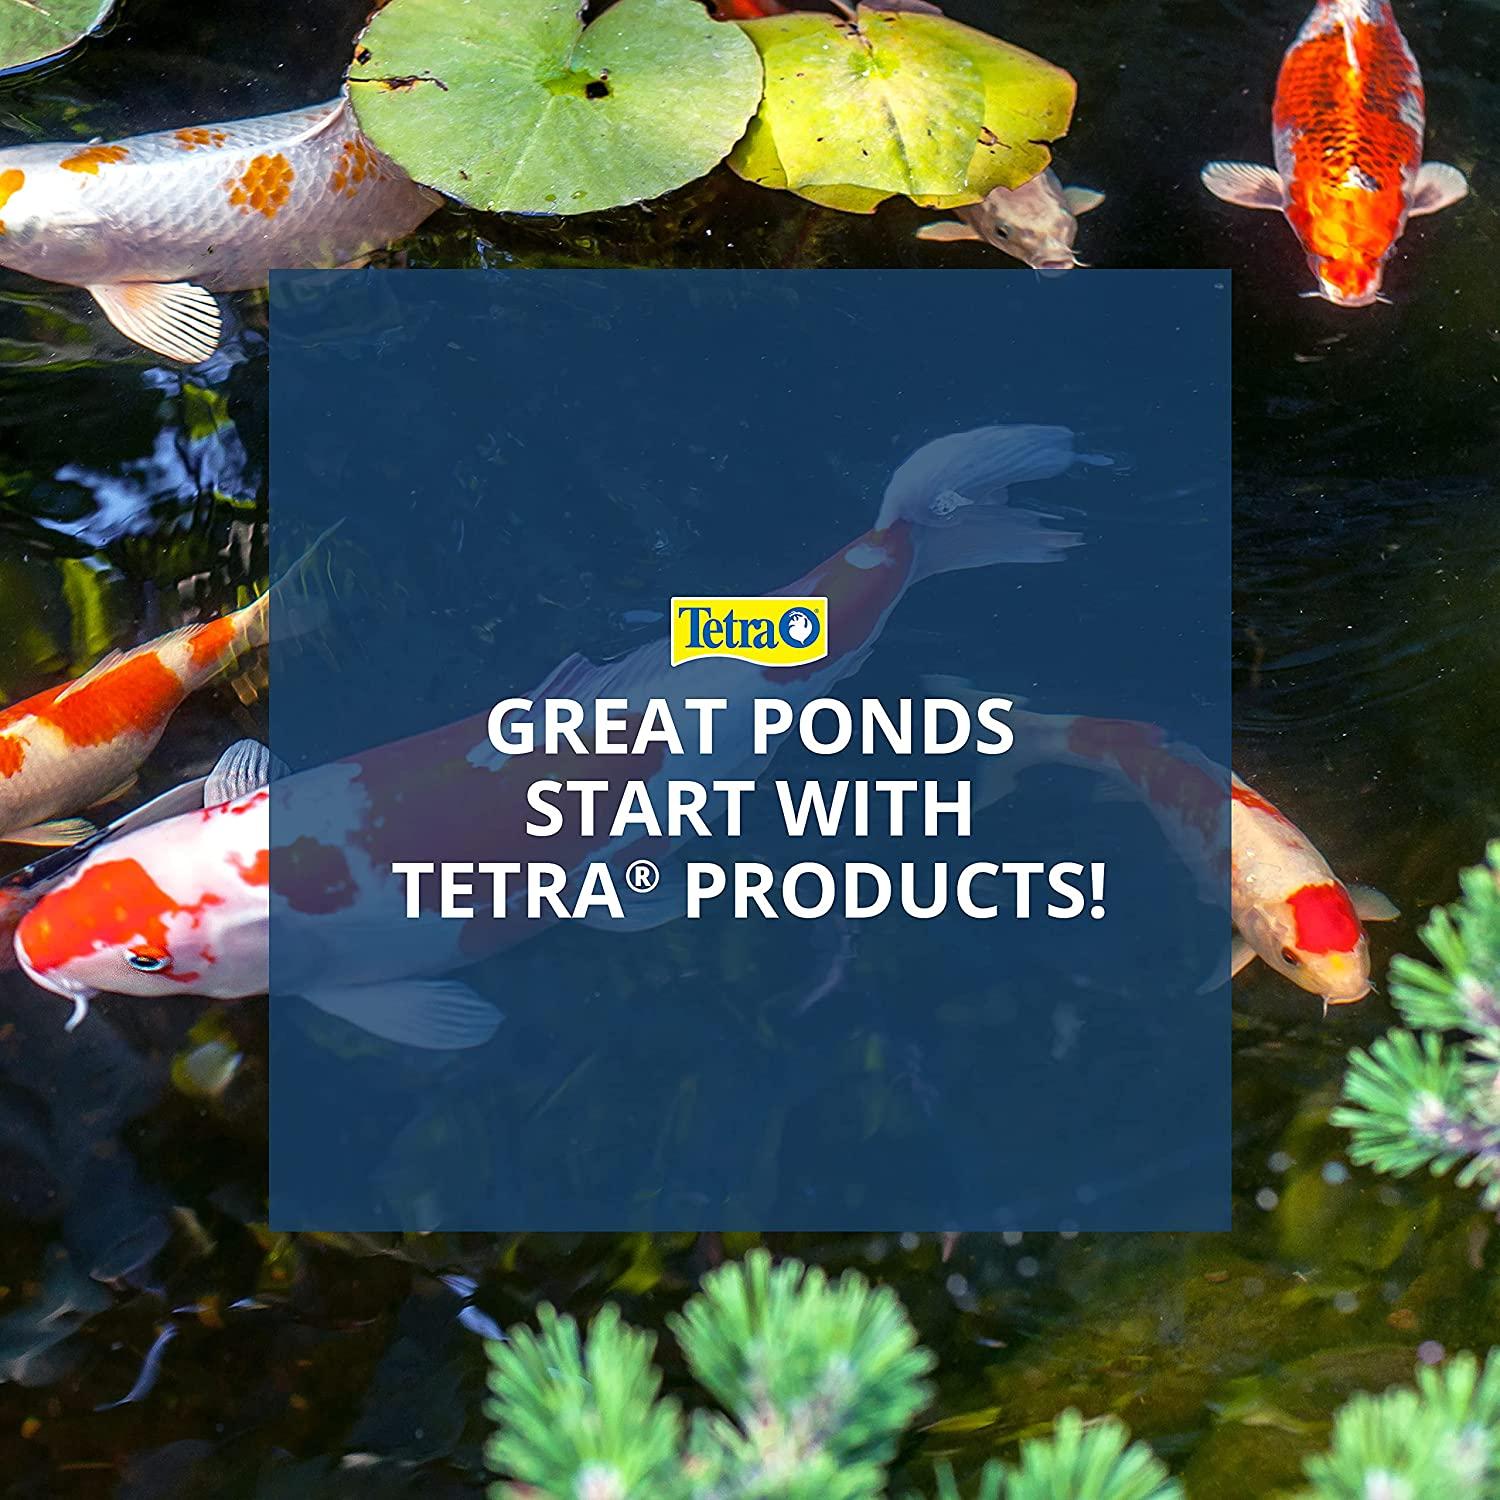 Tetra Pond Sticks, 1 lb.